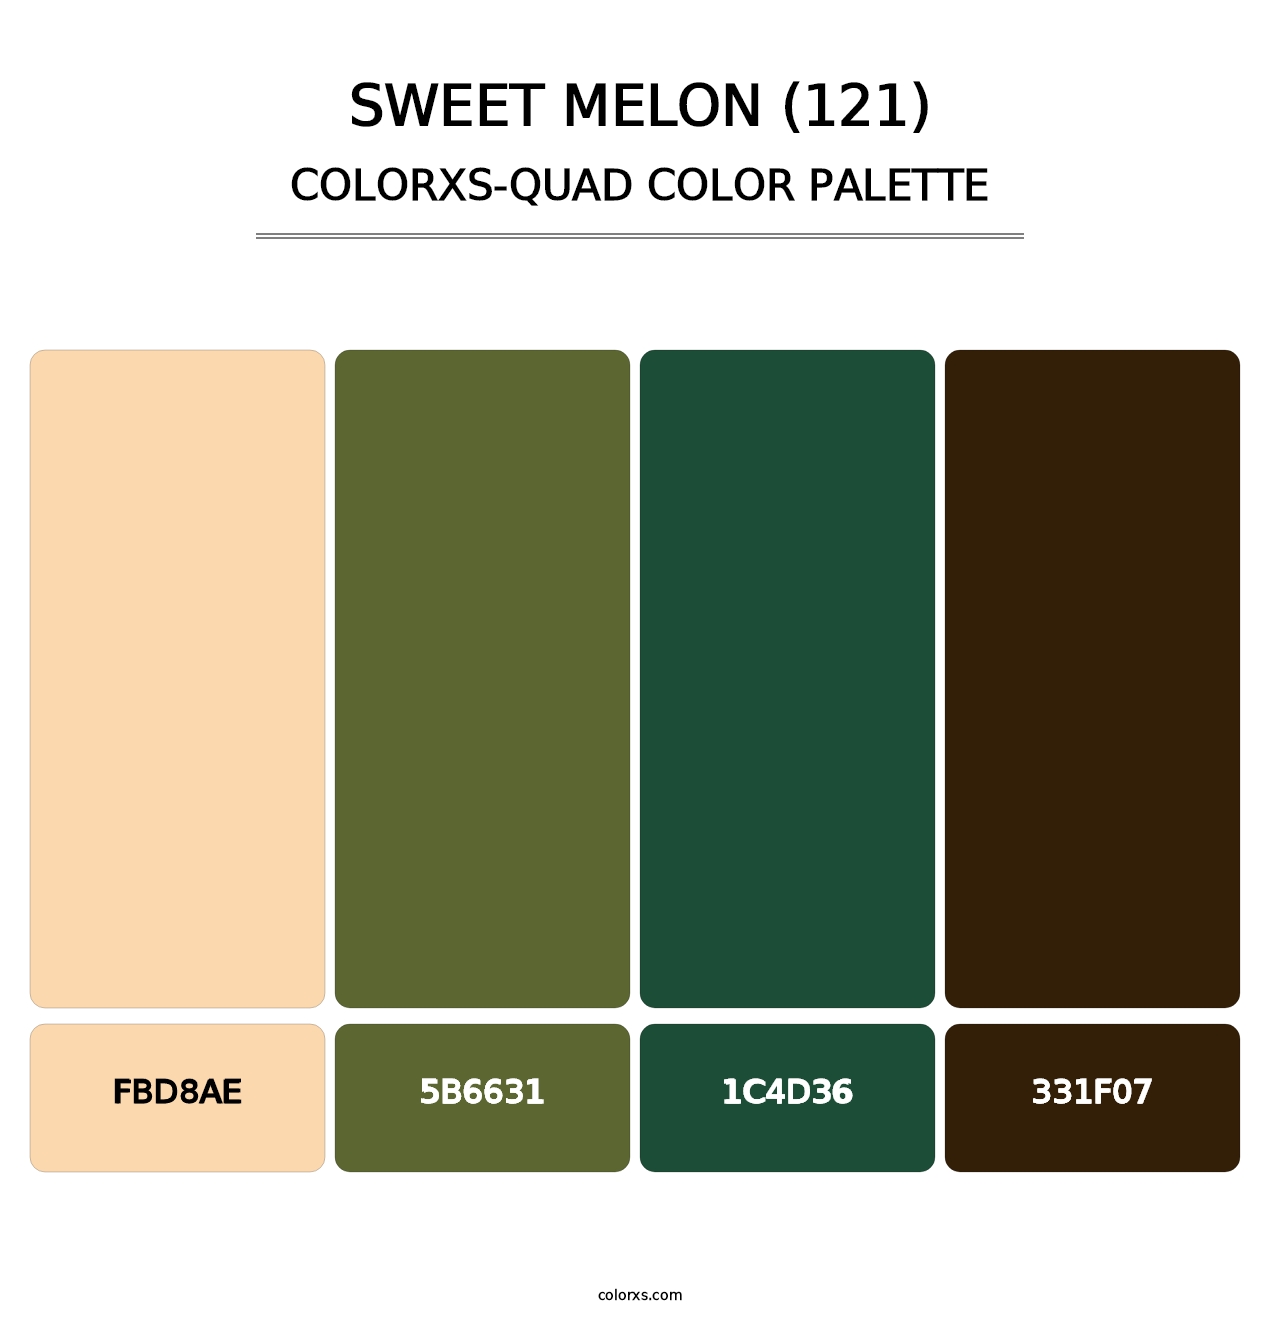 Sweet Melon (121) - Colorxs Quad Palette